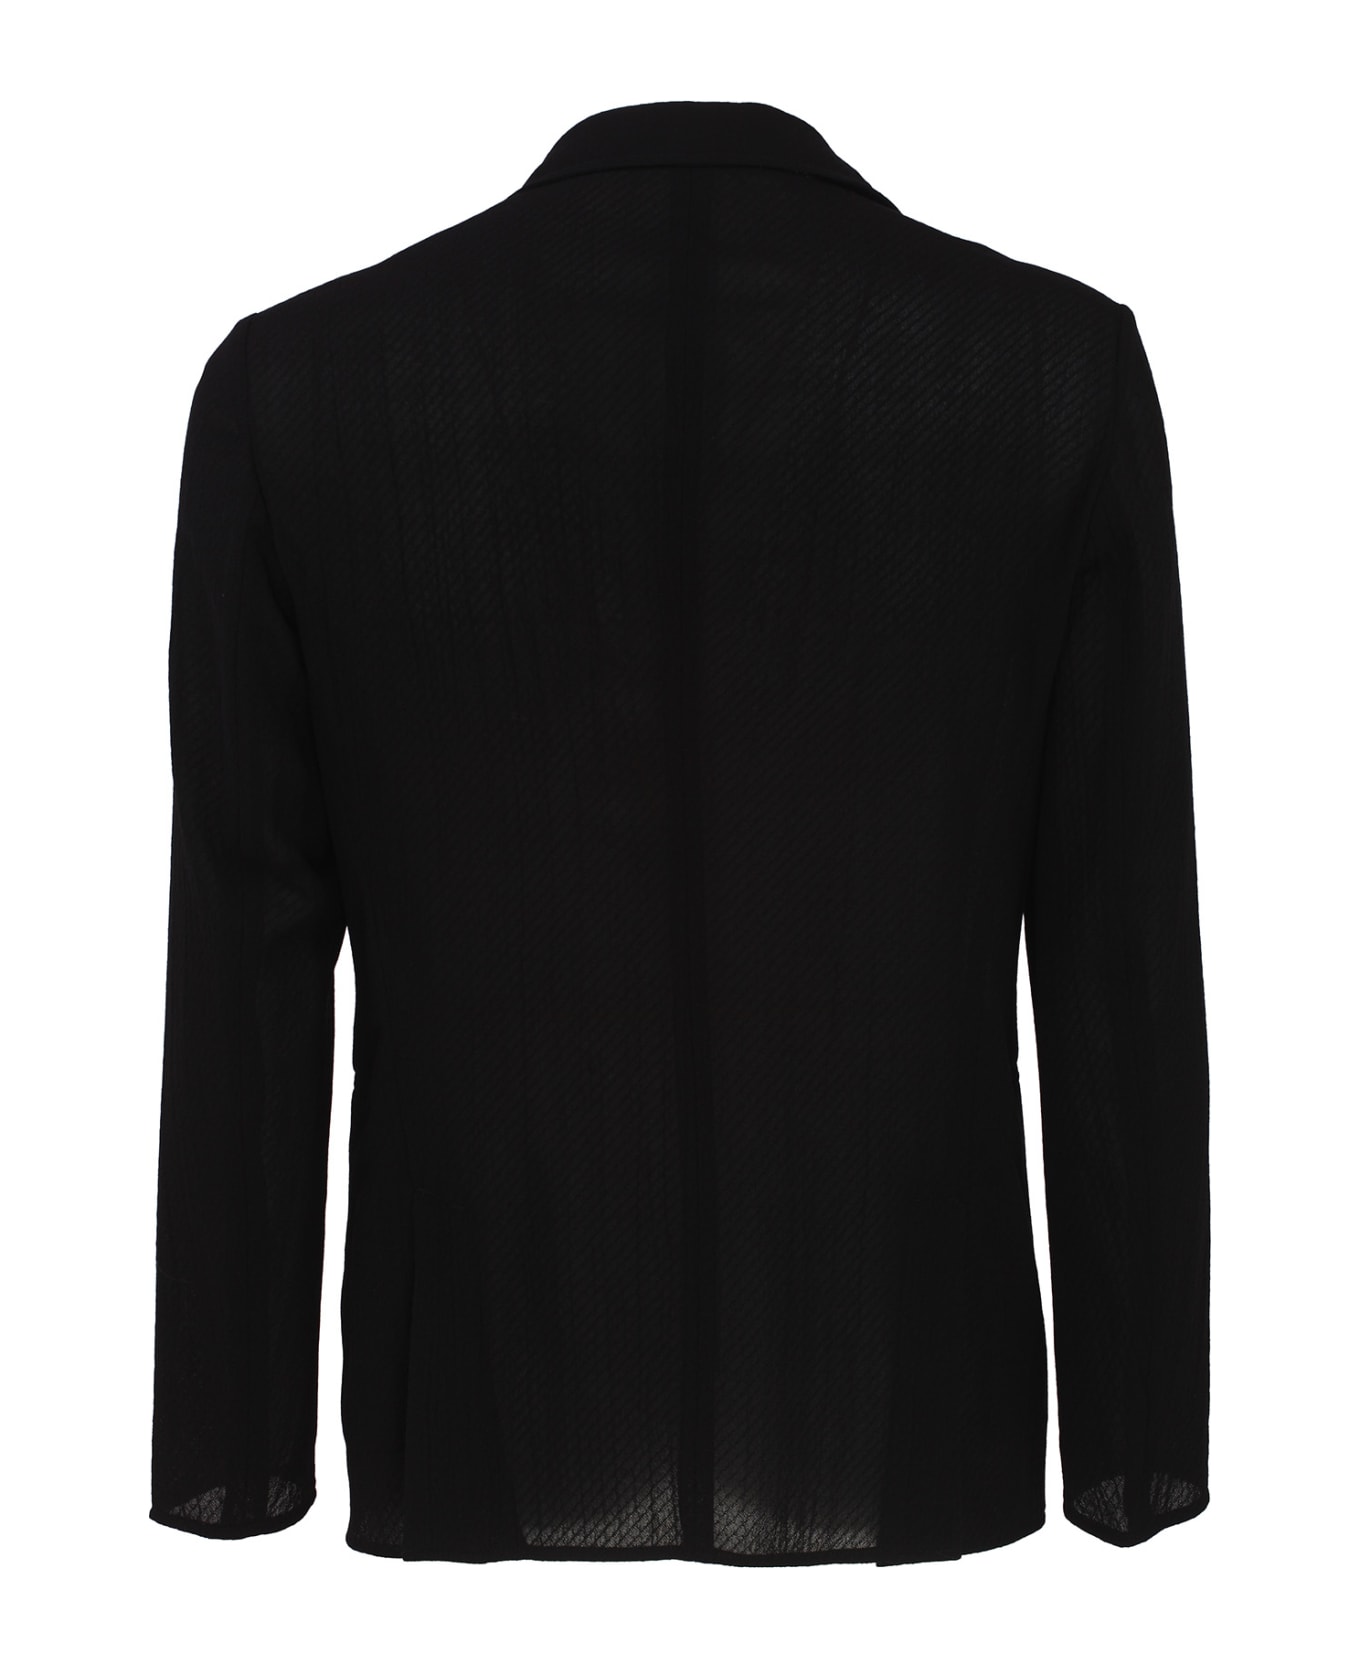 Emporio Armani Jackets Black - Black ブレザー